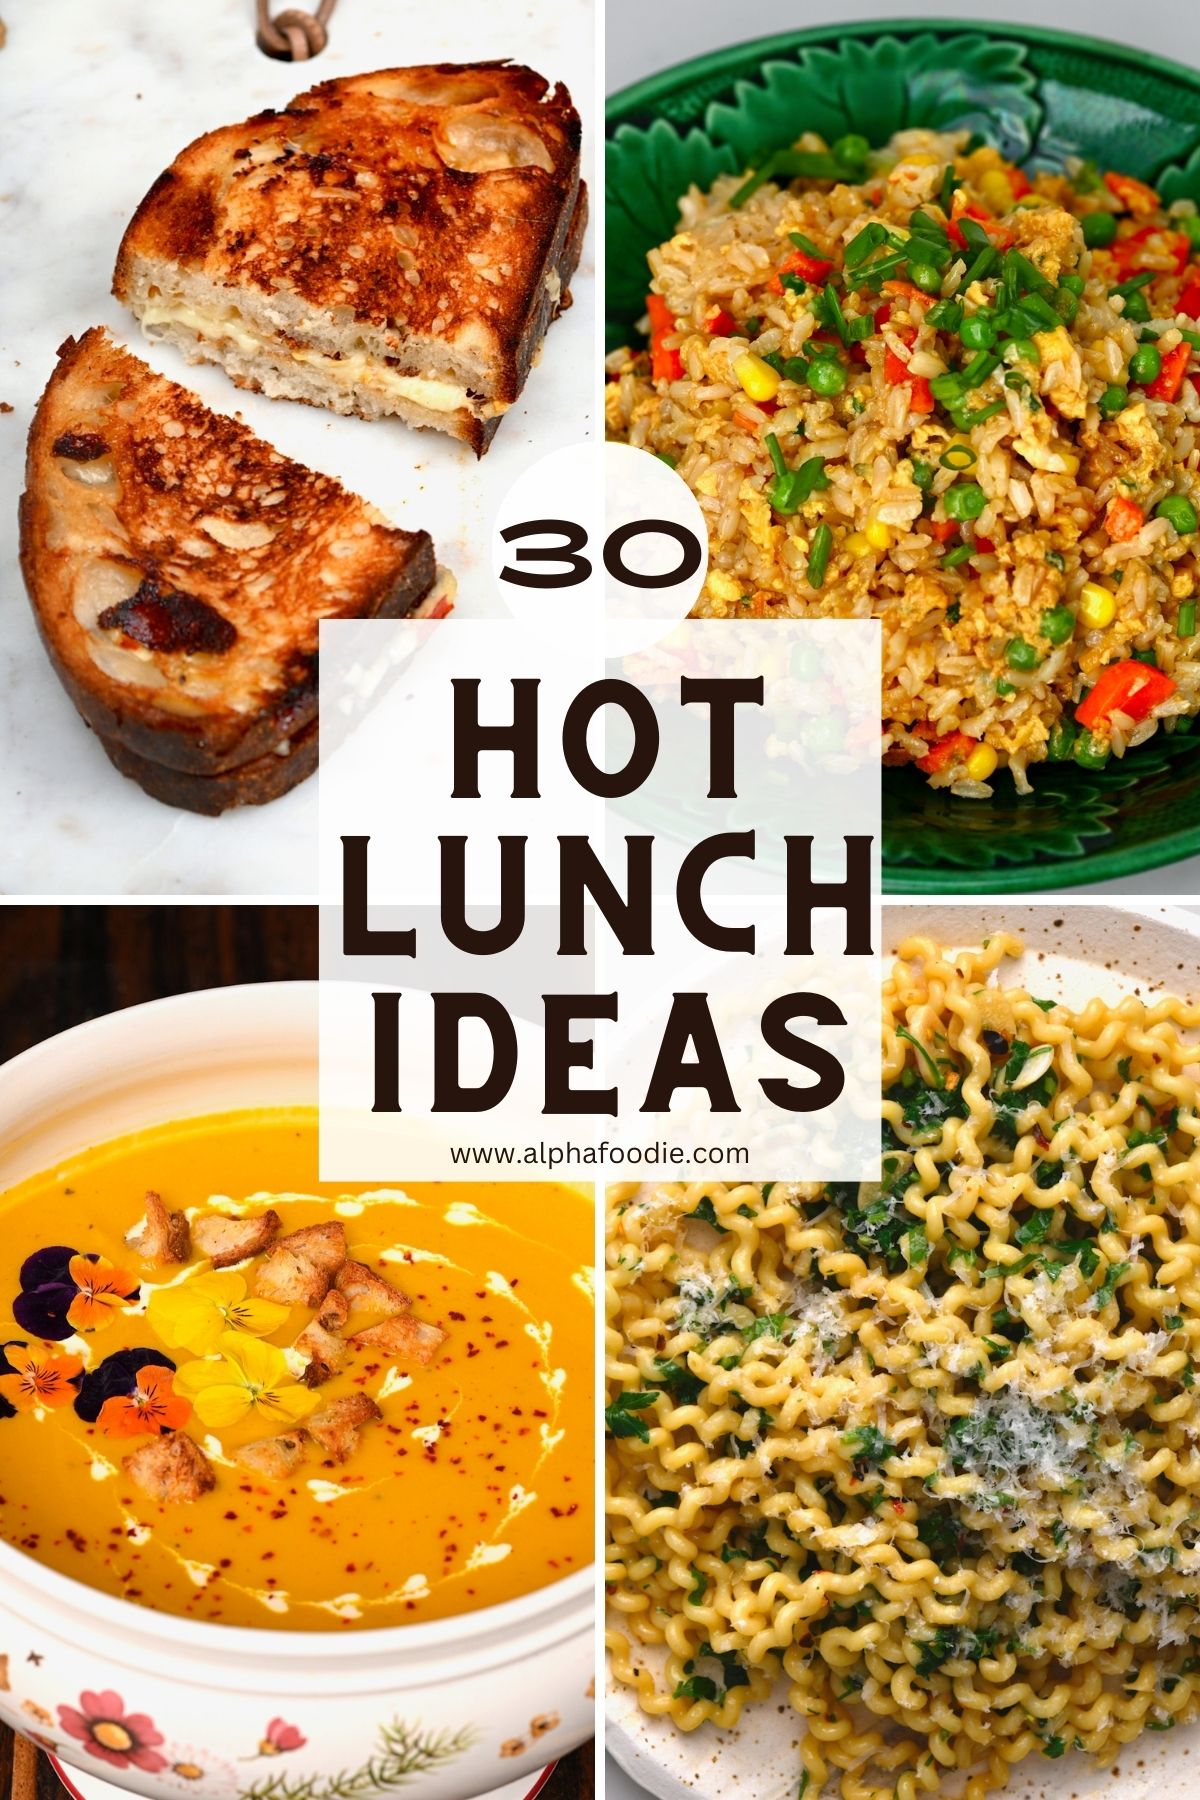 https://www.alphafoodie.com/wp-content/uploads/2022/09/Hot-Lunch-Ideas-Main.jpeg